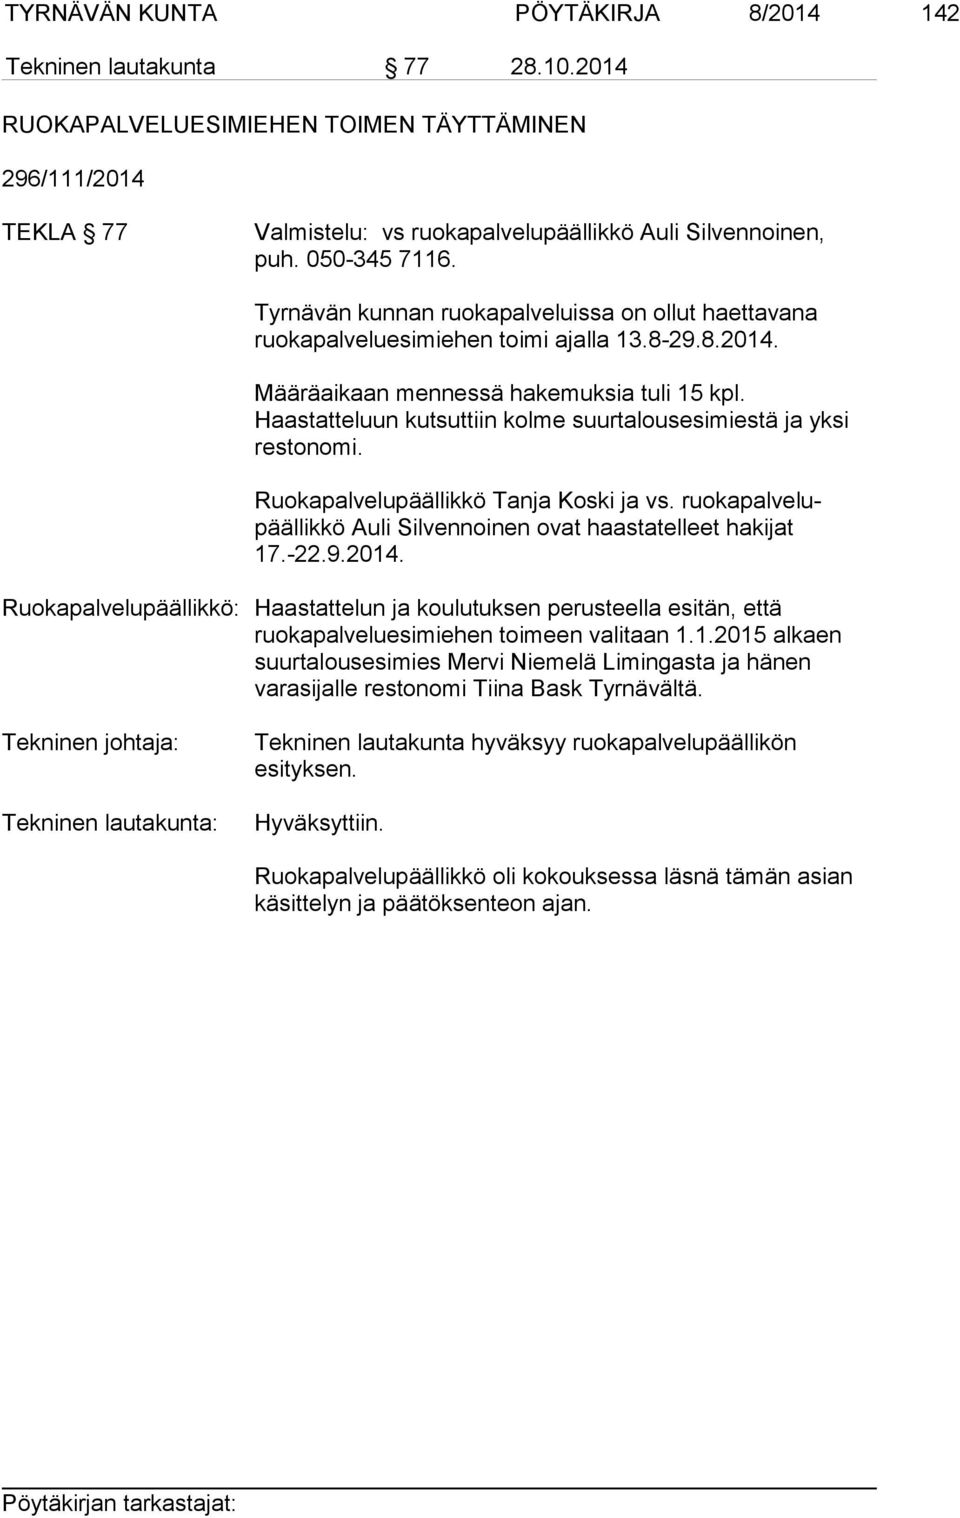 Haastatteluun kutsuttiin kolme suurtalousesimiestä ja yksi restonomi. Ruokapalvelupäällikkö Tanja Koski ja vs. ruokapalvelupäällikkö Auli Silvennoinen ovat haastatelleet hakijat 17.-22.9.2014.